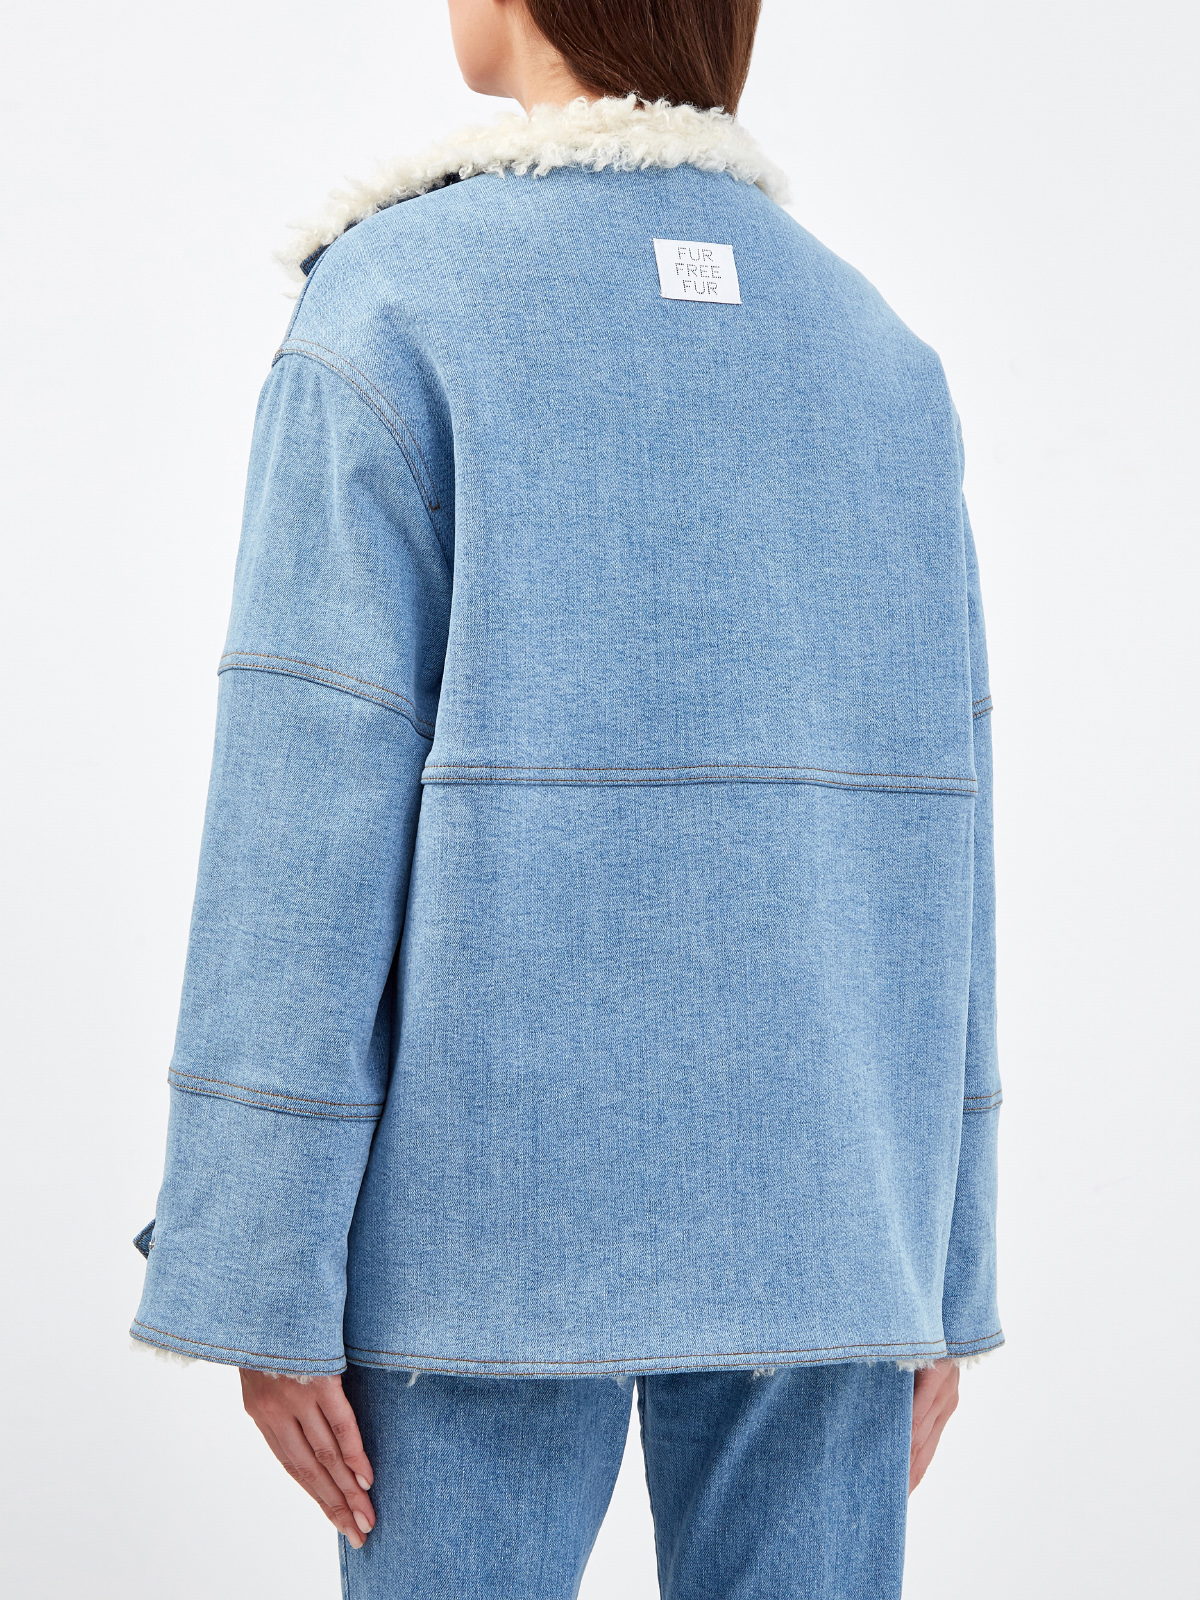 Асимметричная куртка из денима и эко-меха Fur Free Fur STELLA McCARTNEY, цвет голубой, размер 38;42;36 - фото 4